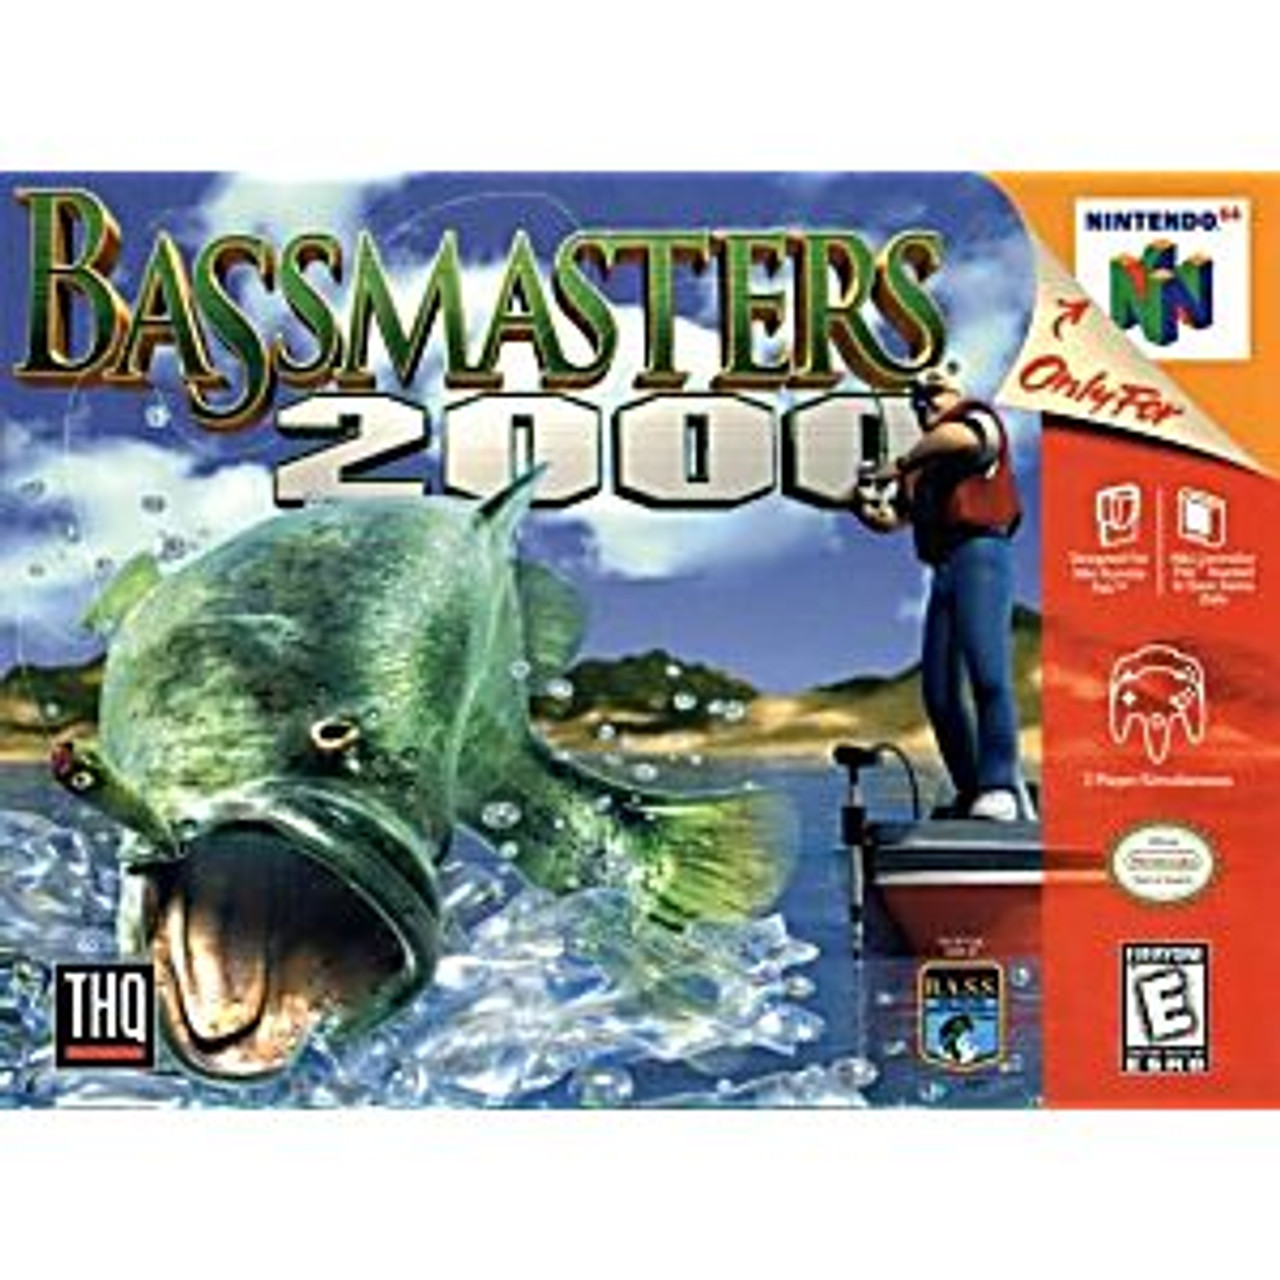 BASSMASTERS 2000 - N64